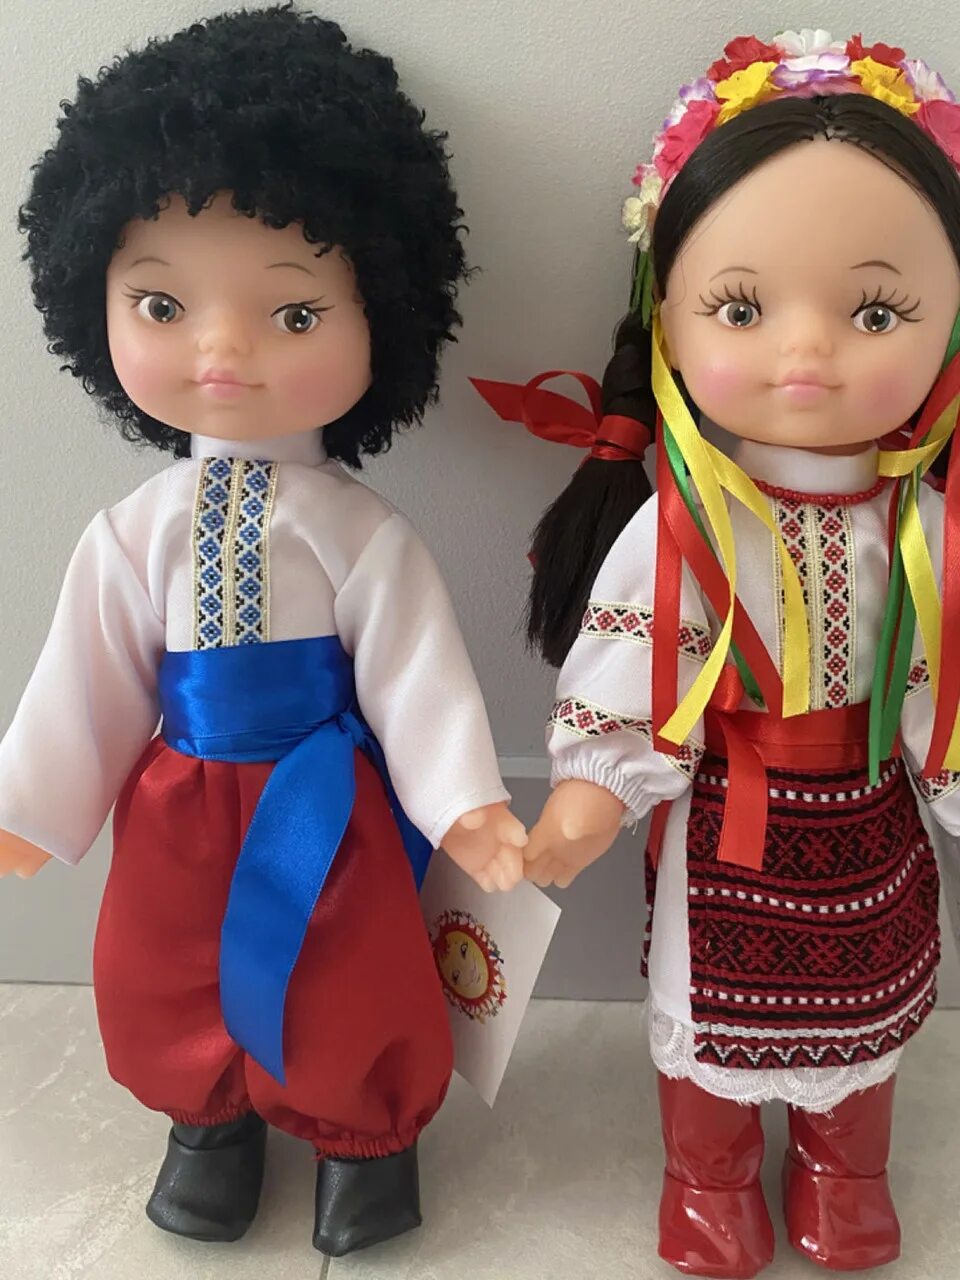 Национальные куклы. Сербские куклы национальные. Французская Национальная кукла. Куклы в национальных костюмах народов России.